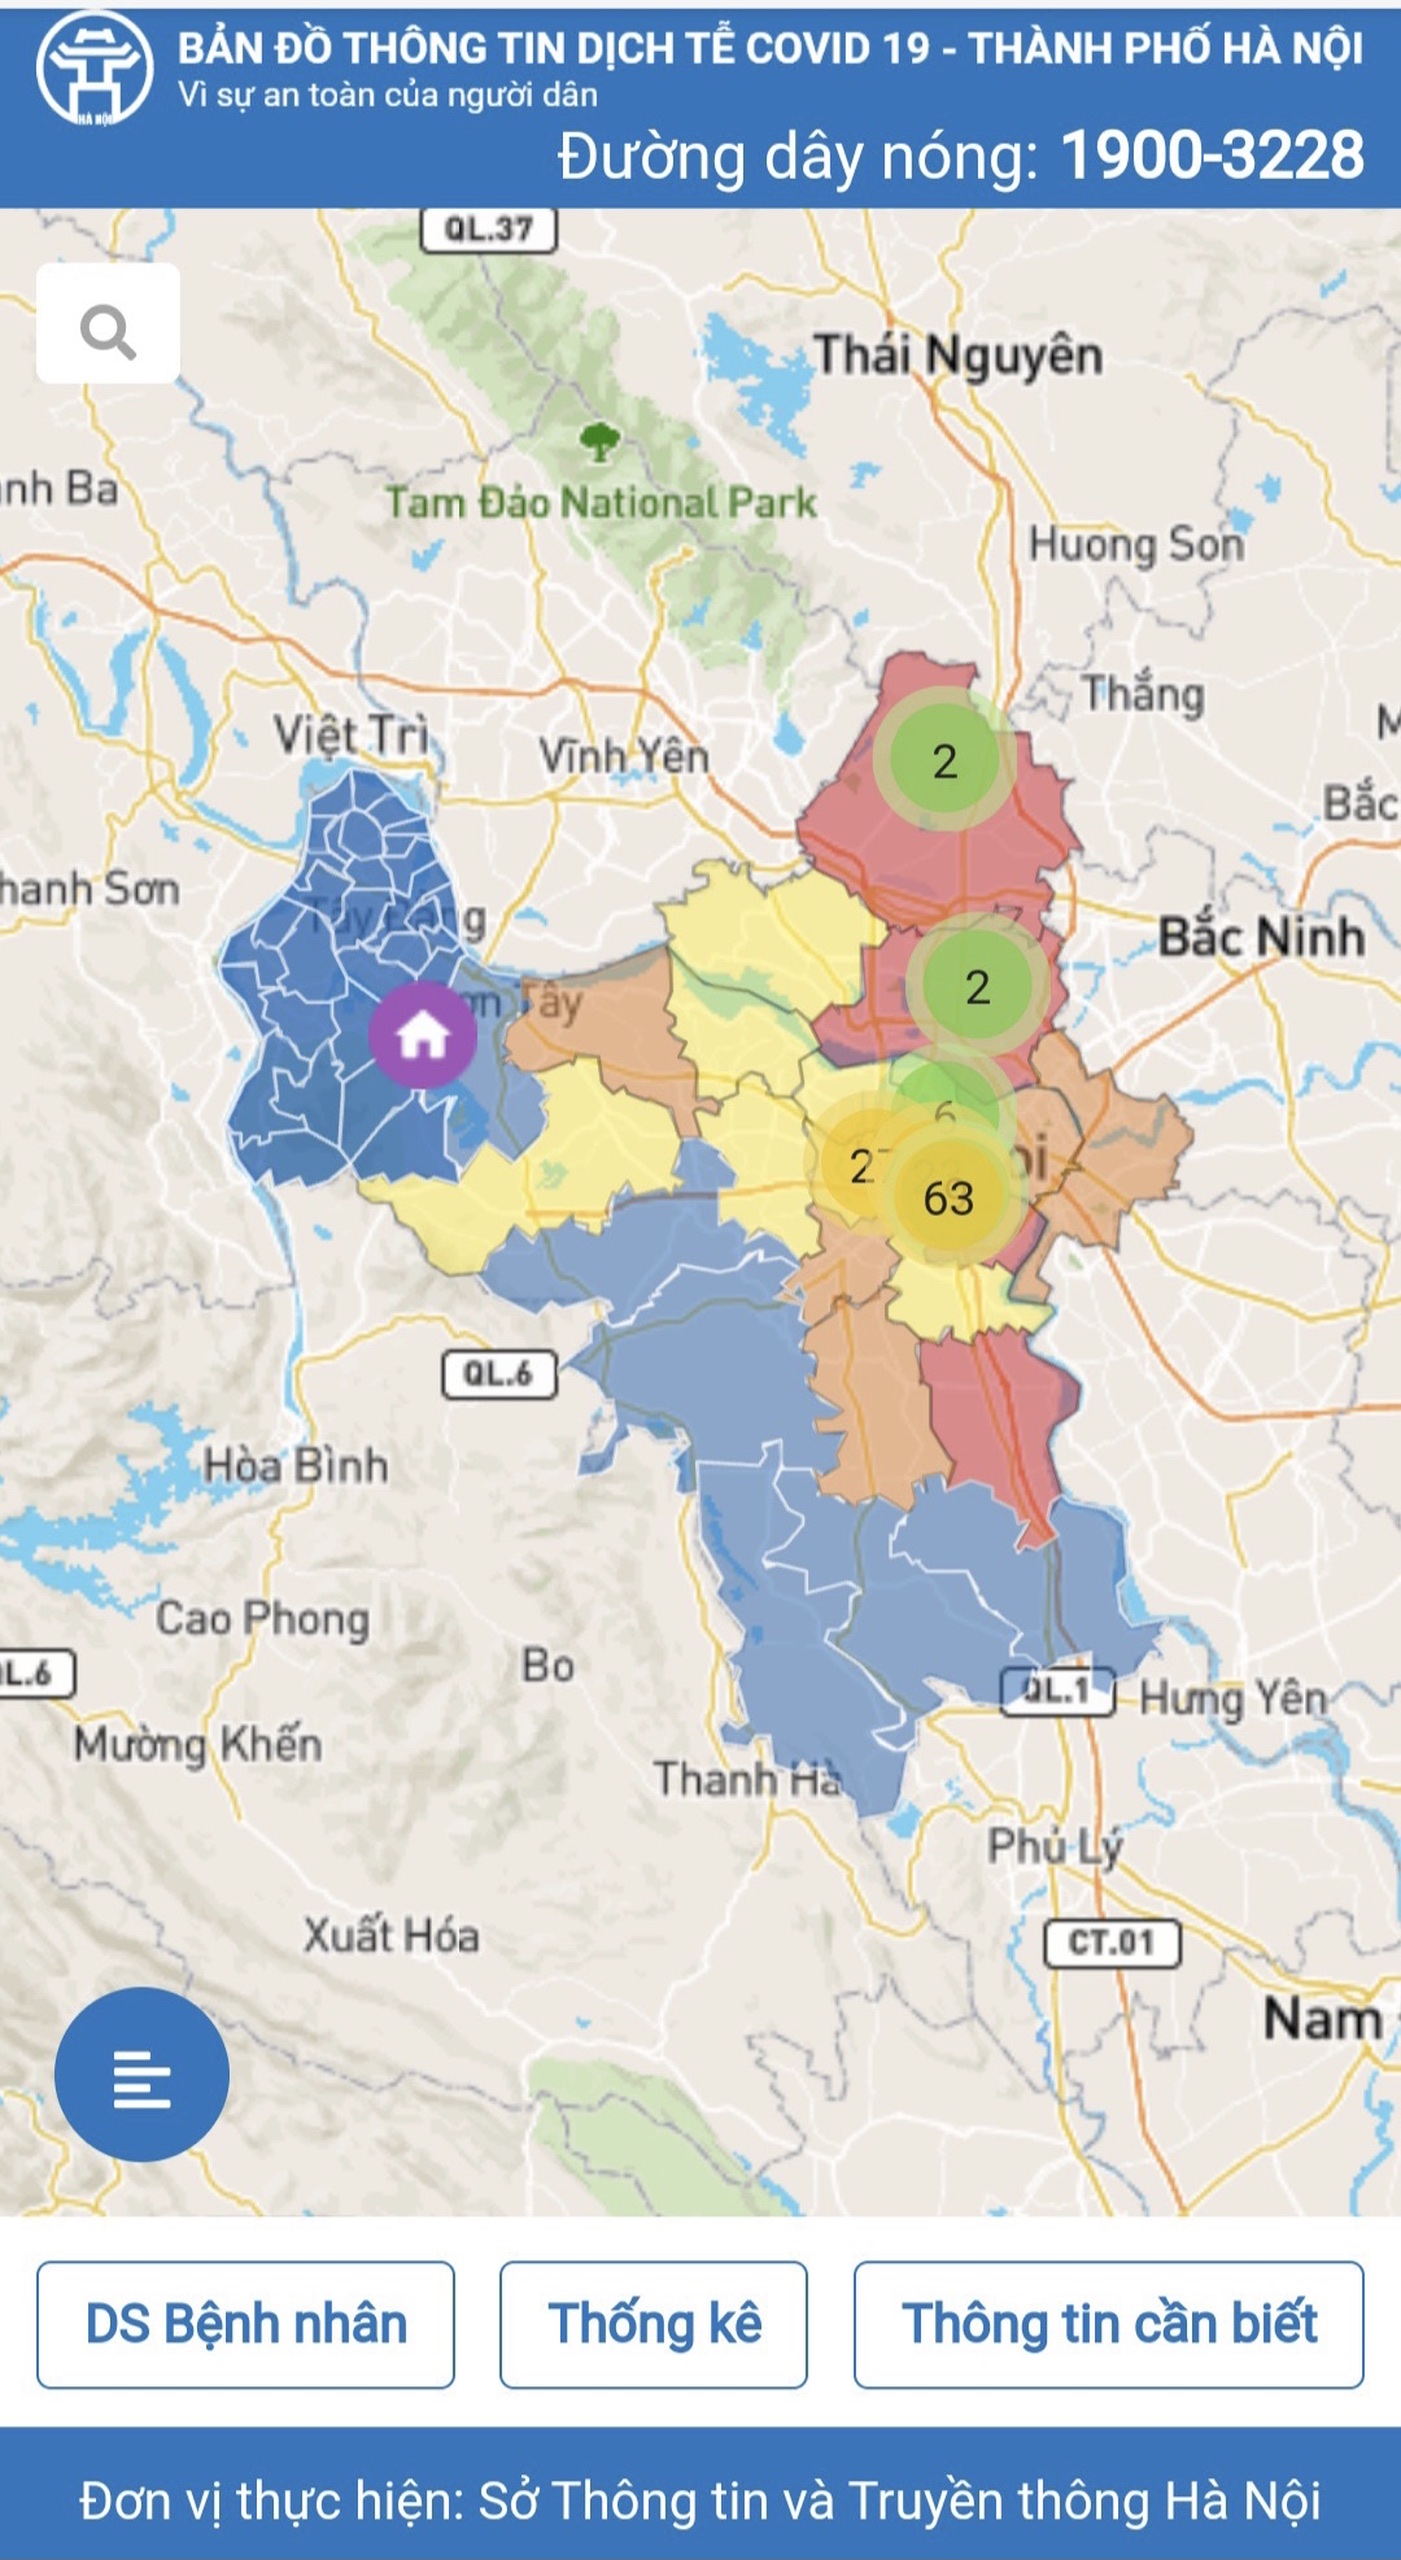 Bản đồ dịch tễ Hà Nội:
Bản đồ dịch tễ Hà Nội sẽ giúp cho bạn nhanh chóng cập nhật tình hình dịch bệnh COVID-19 tại Hà Nội. Với các thông tin trực quan và chi tiết, bạn sẽ có thể cùng cộng đồng đẩy lùi đại dịch một cách hiệu quả.